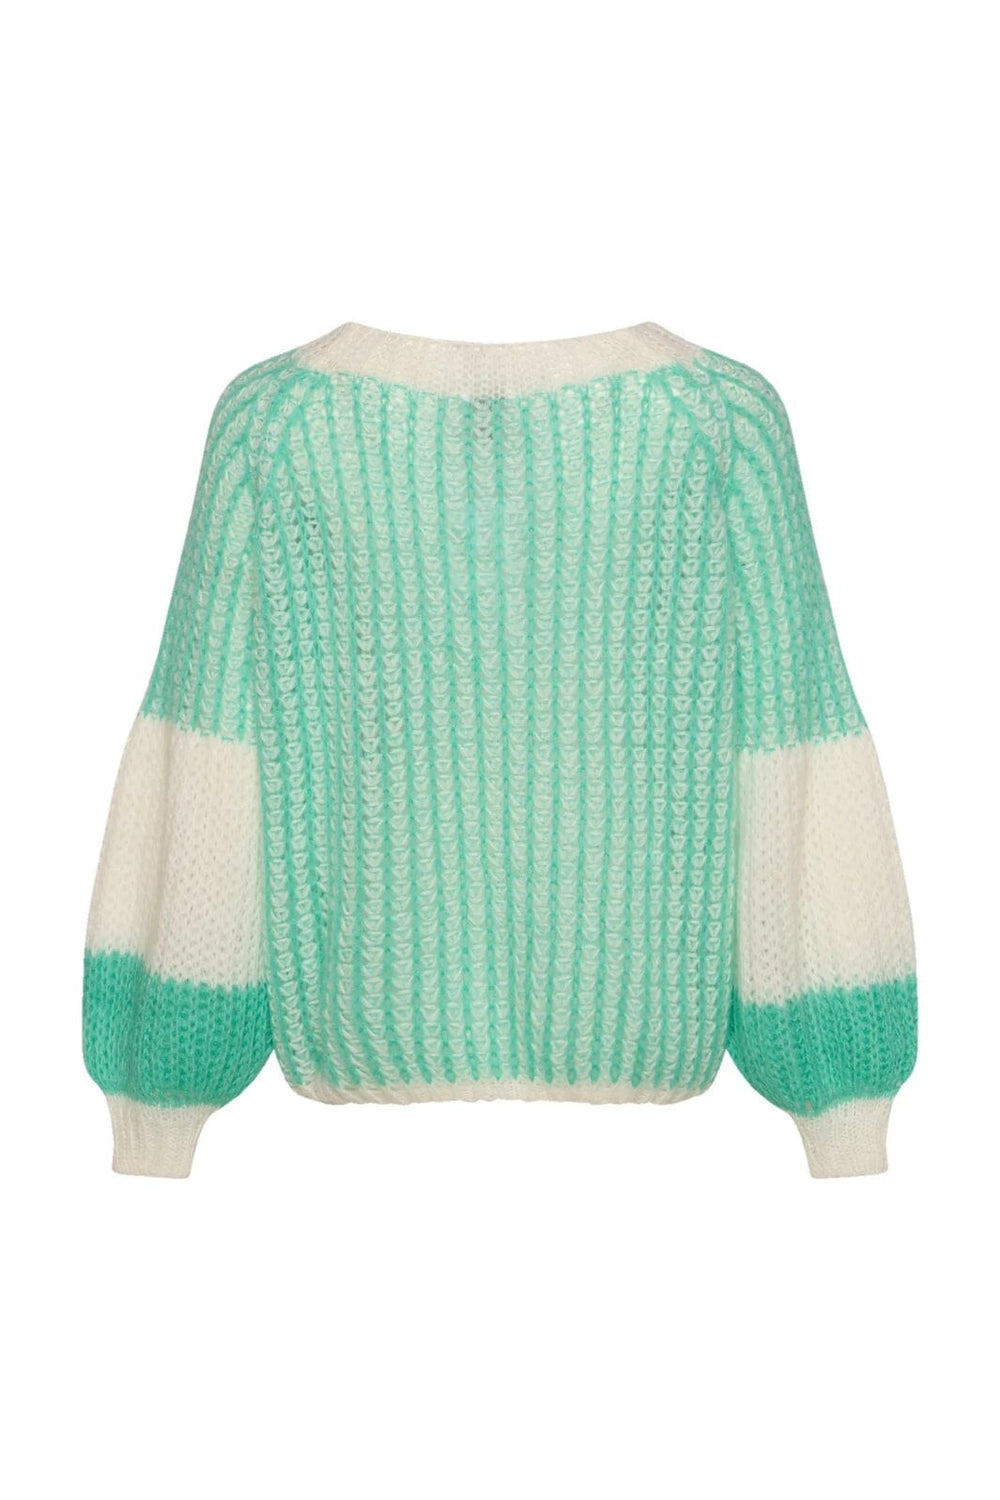 Noella - Liana Knit Sweater - Mint/White 